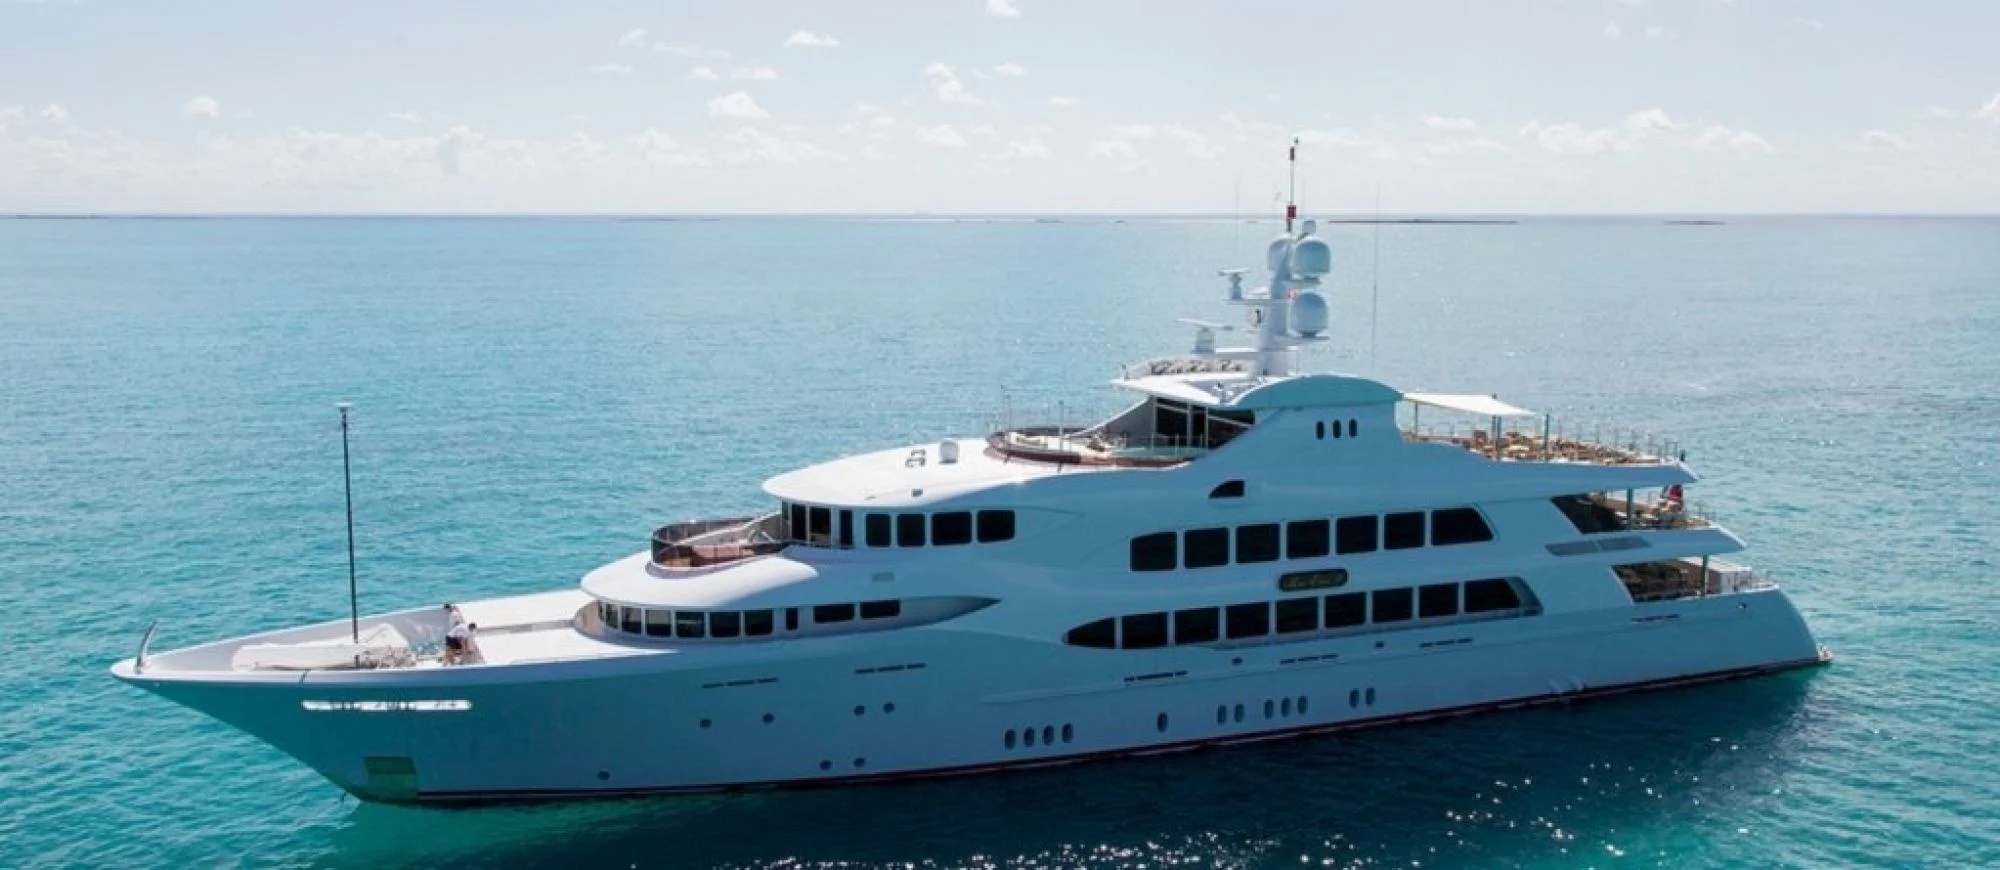 Những con tàu xa hoa bậc nhất triển lãm du thuyền Monaco, nơi quy tụ tài sản của nhà giàu thế giới - ảnh 4